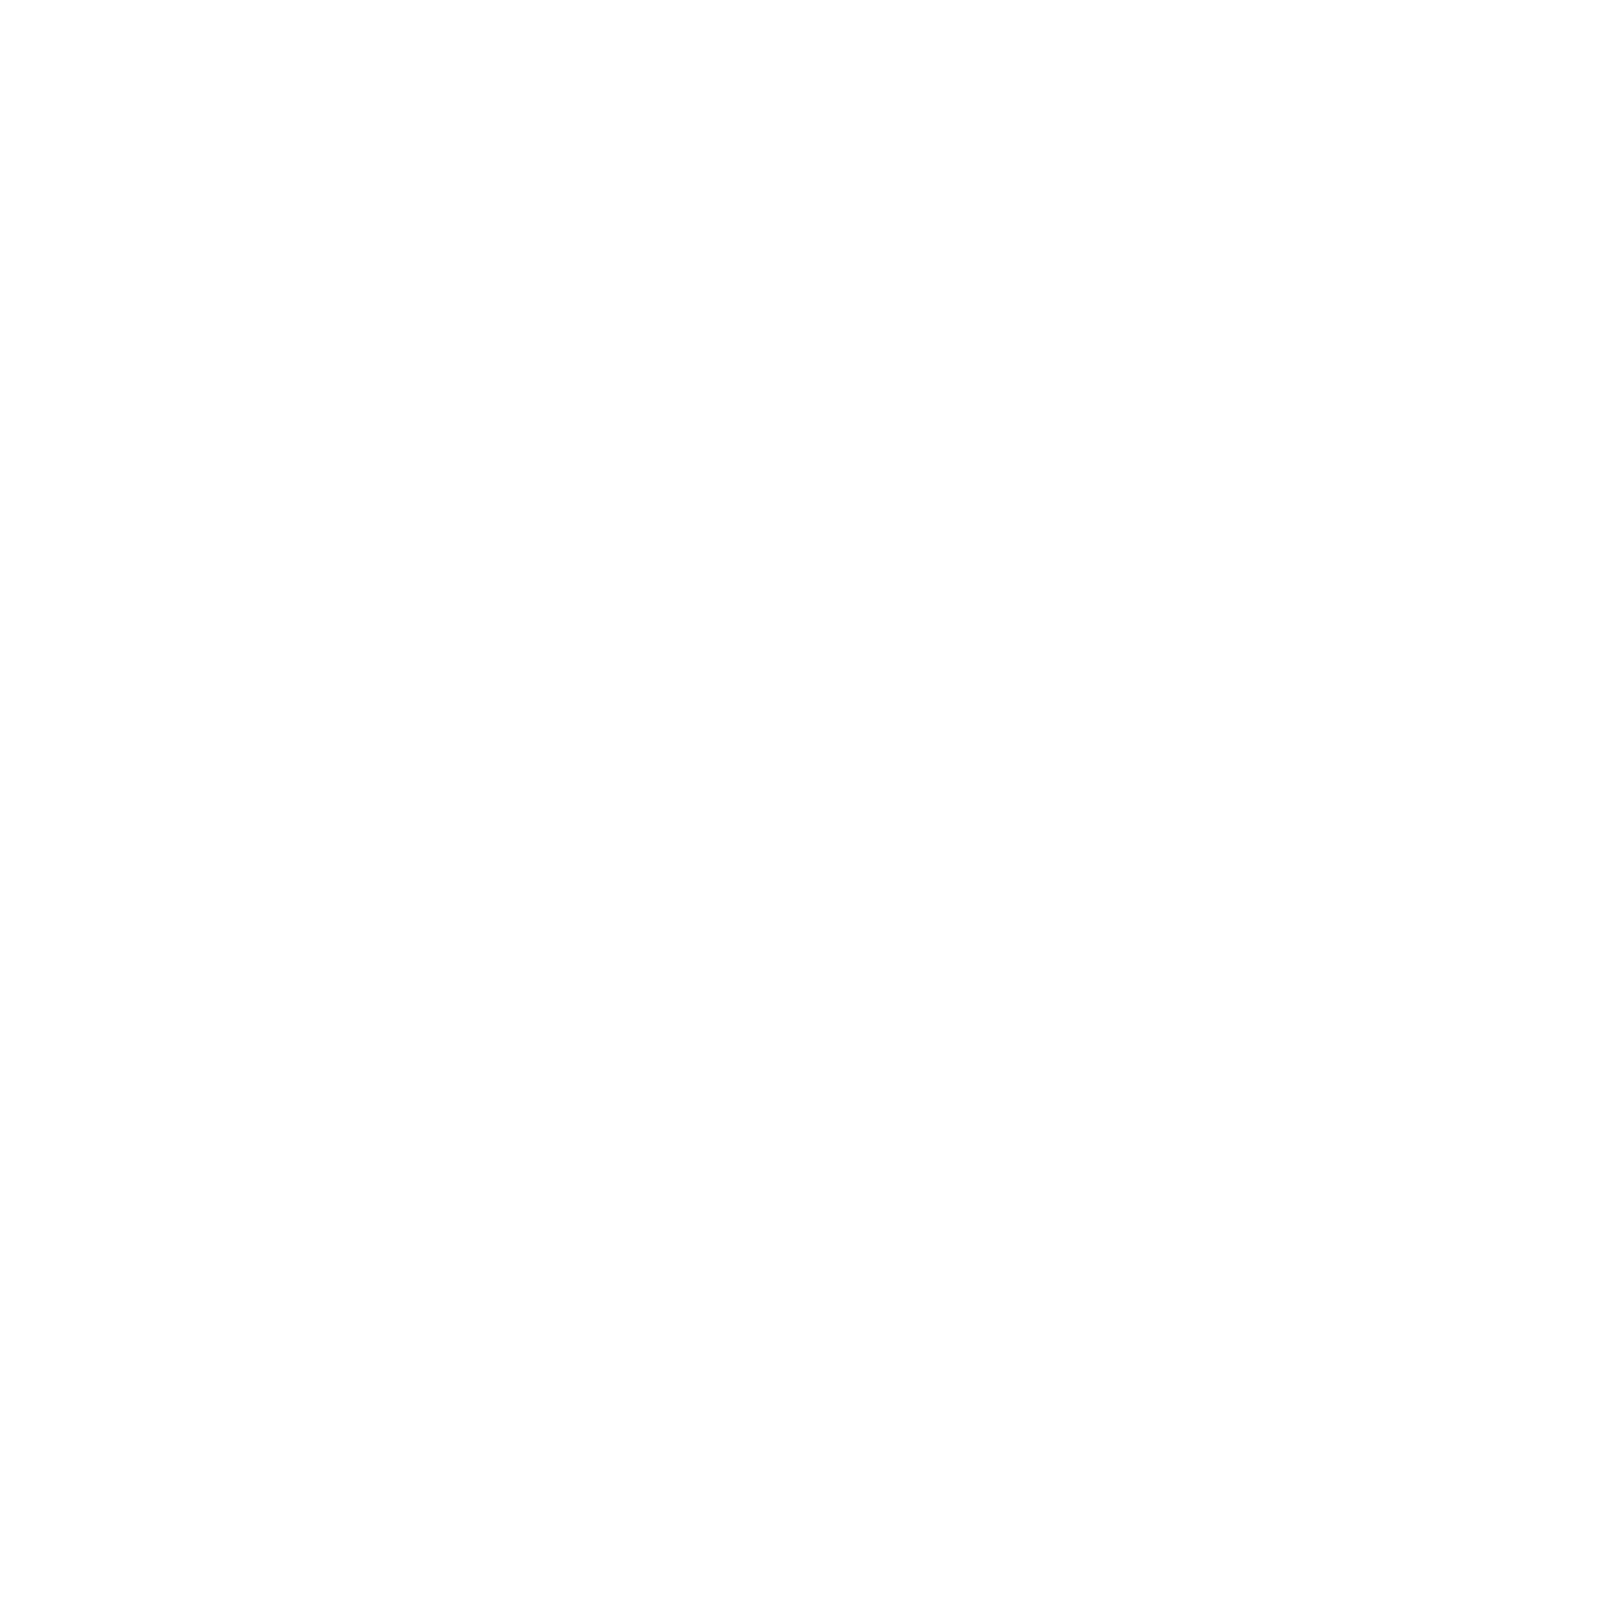 The Wunderground Ambulance